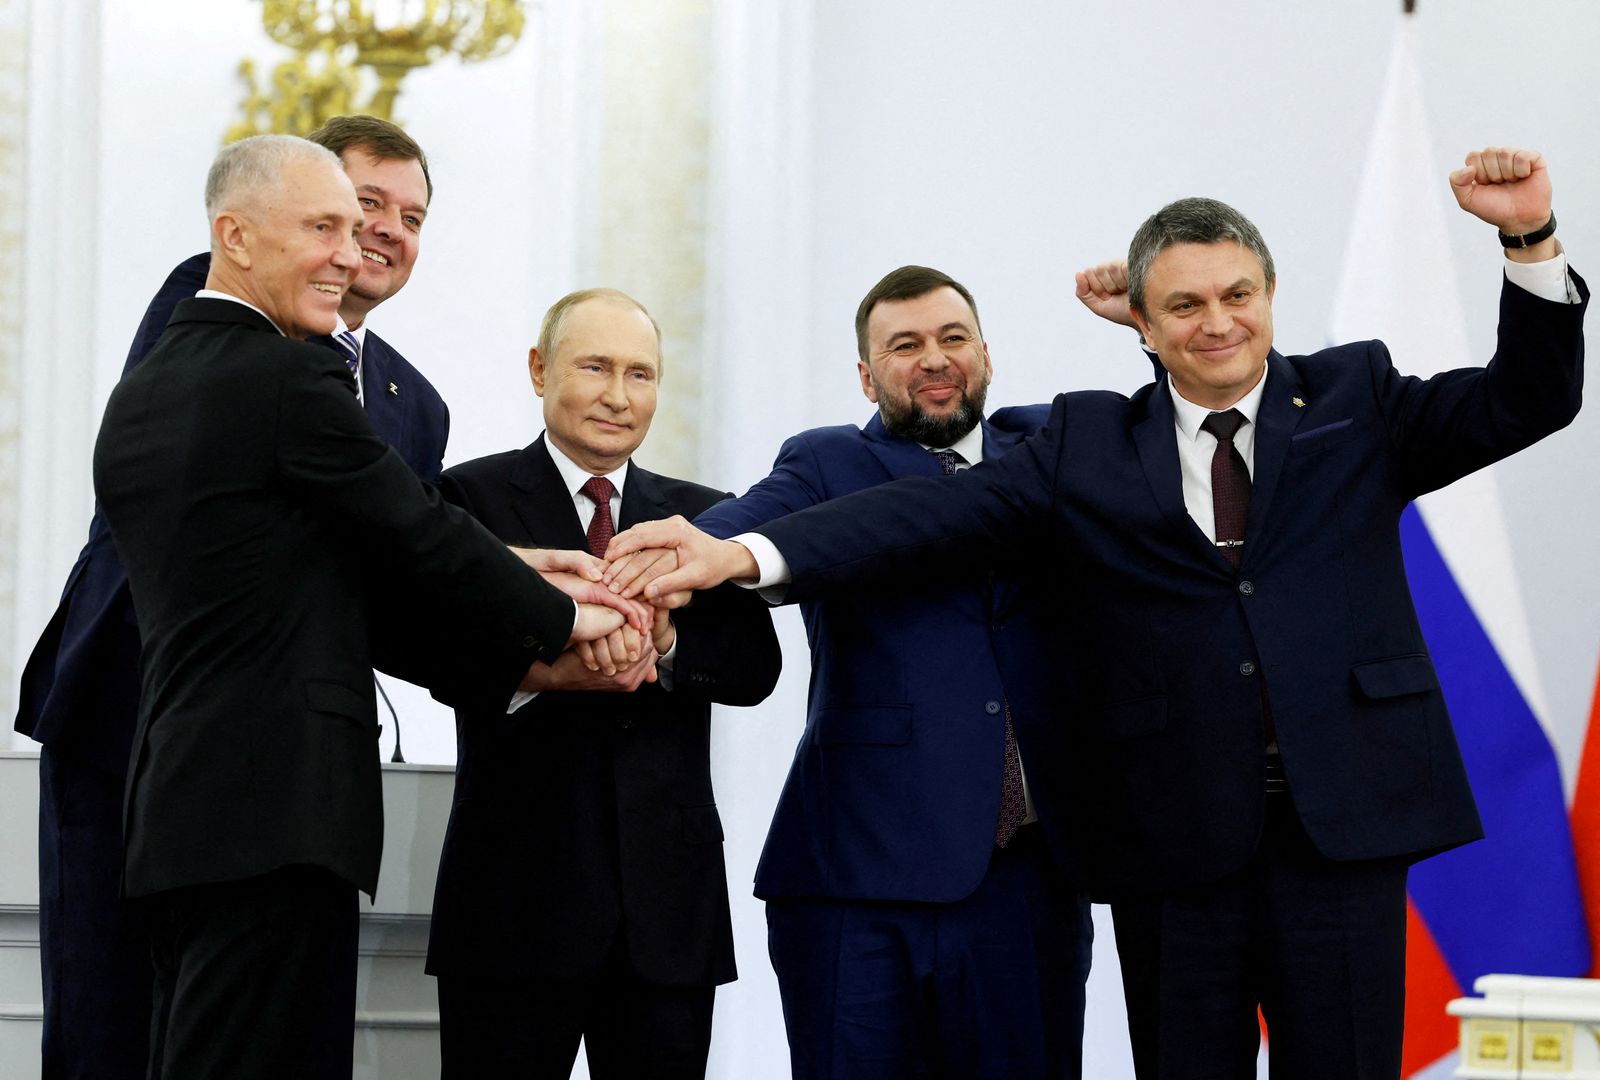 الرئيس الروسي فلاديمير بوتين مع القادة الموالين لروسيا بعد إعلان موسكو ضم مناطق أوكرانية إلى روسيا إثر تنظيمها استفتاء شعبياً في تلك المناطق، 30 سبتمبر 2022 - via REUTERS